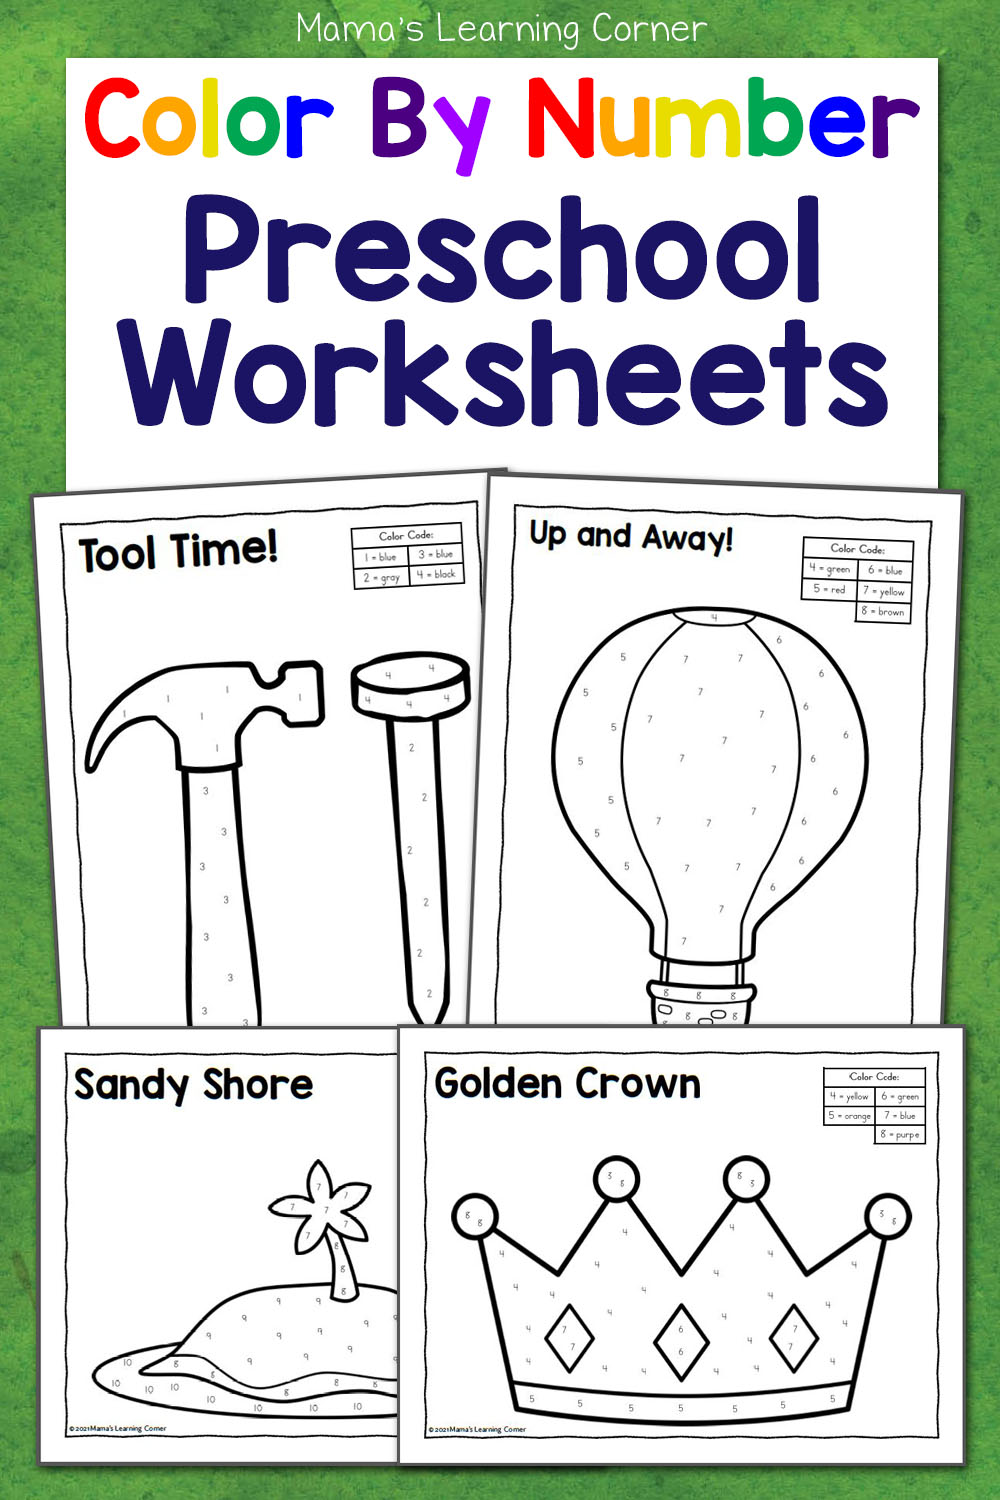 Number Preschool Worksheets